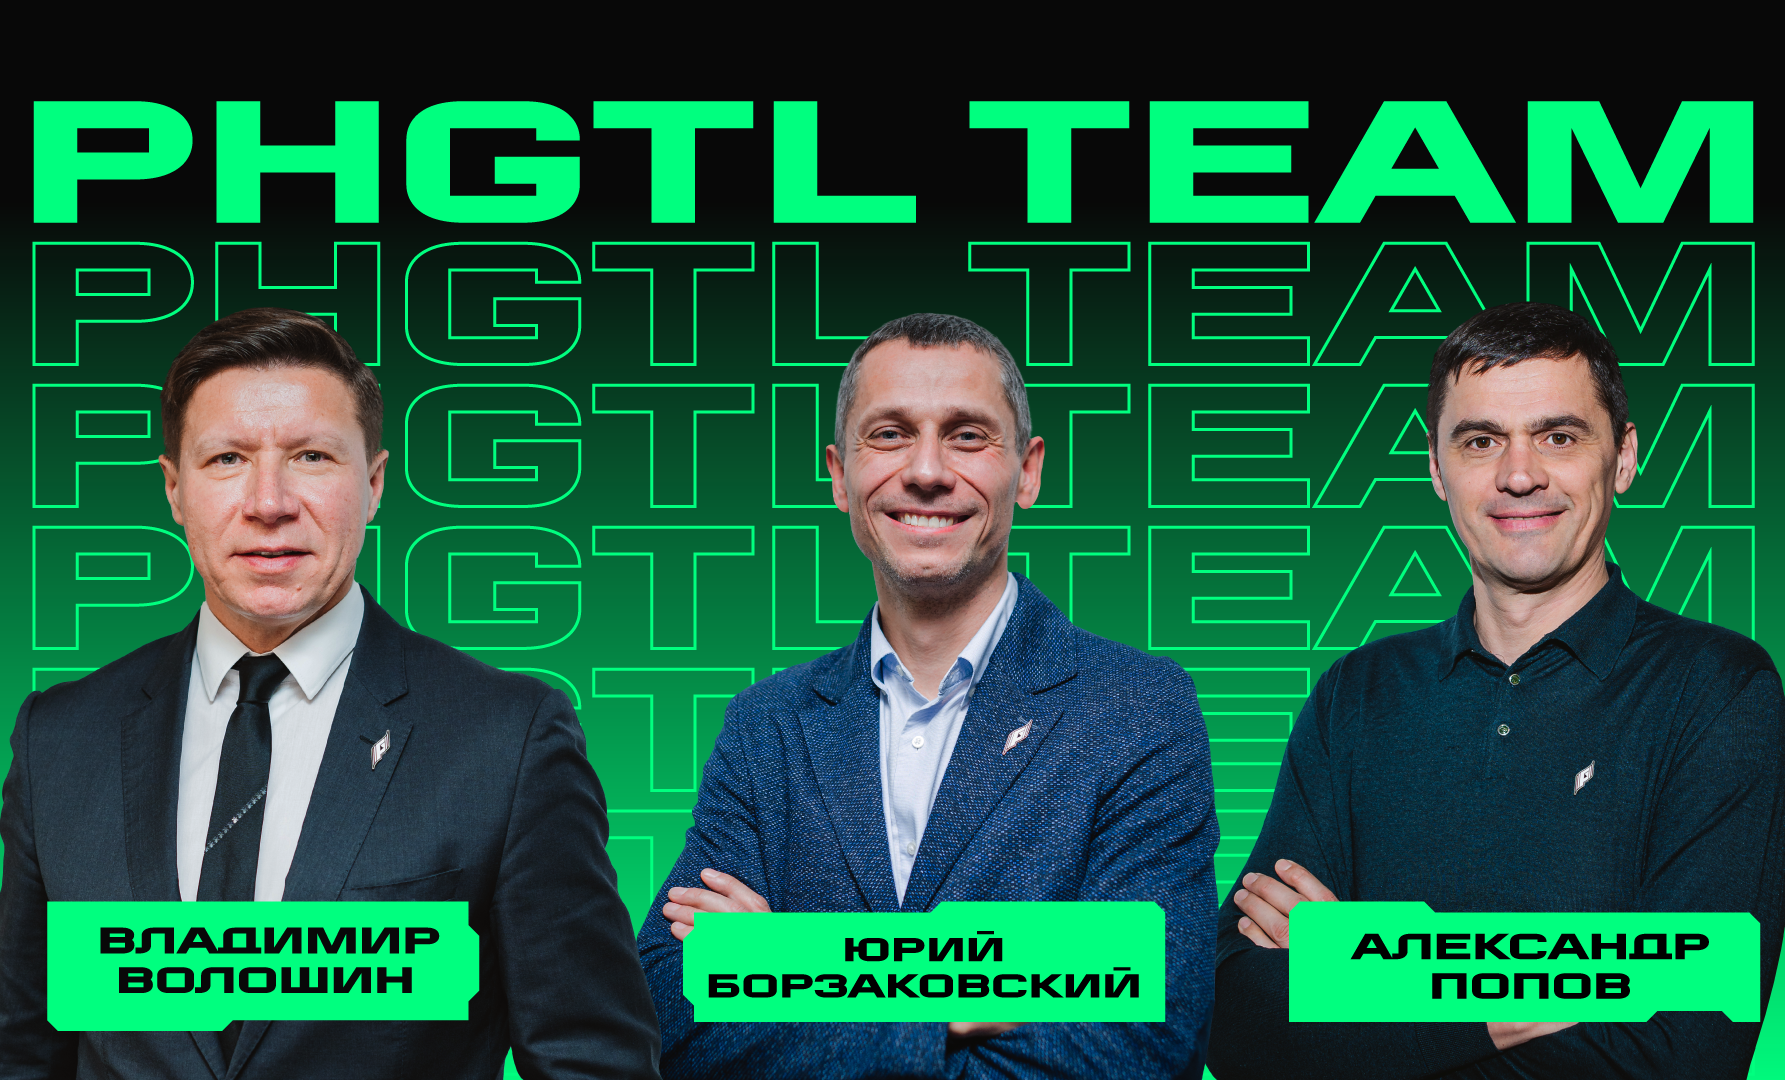 Юрий Борзаковский, Александр Попов и Владимир Волошин стали частью Phygital Team Игр Будущего